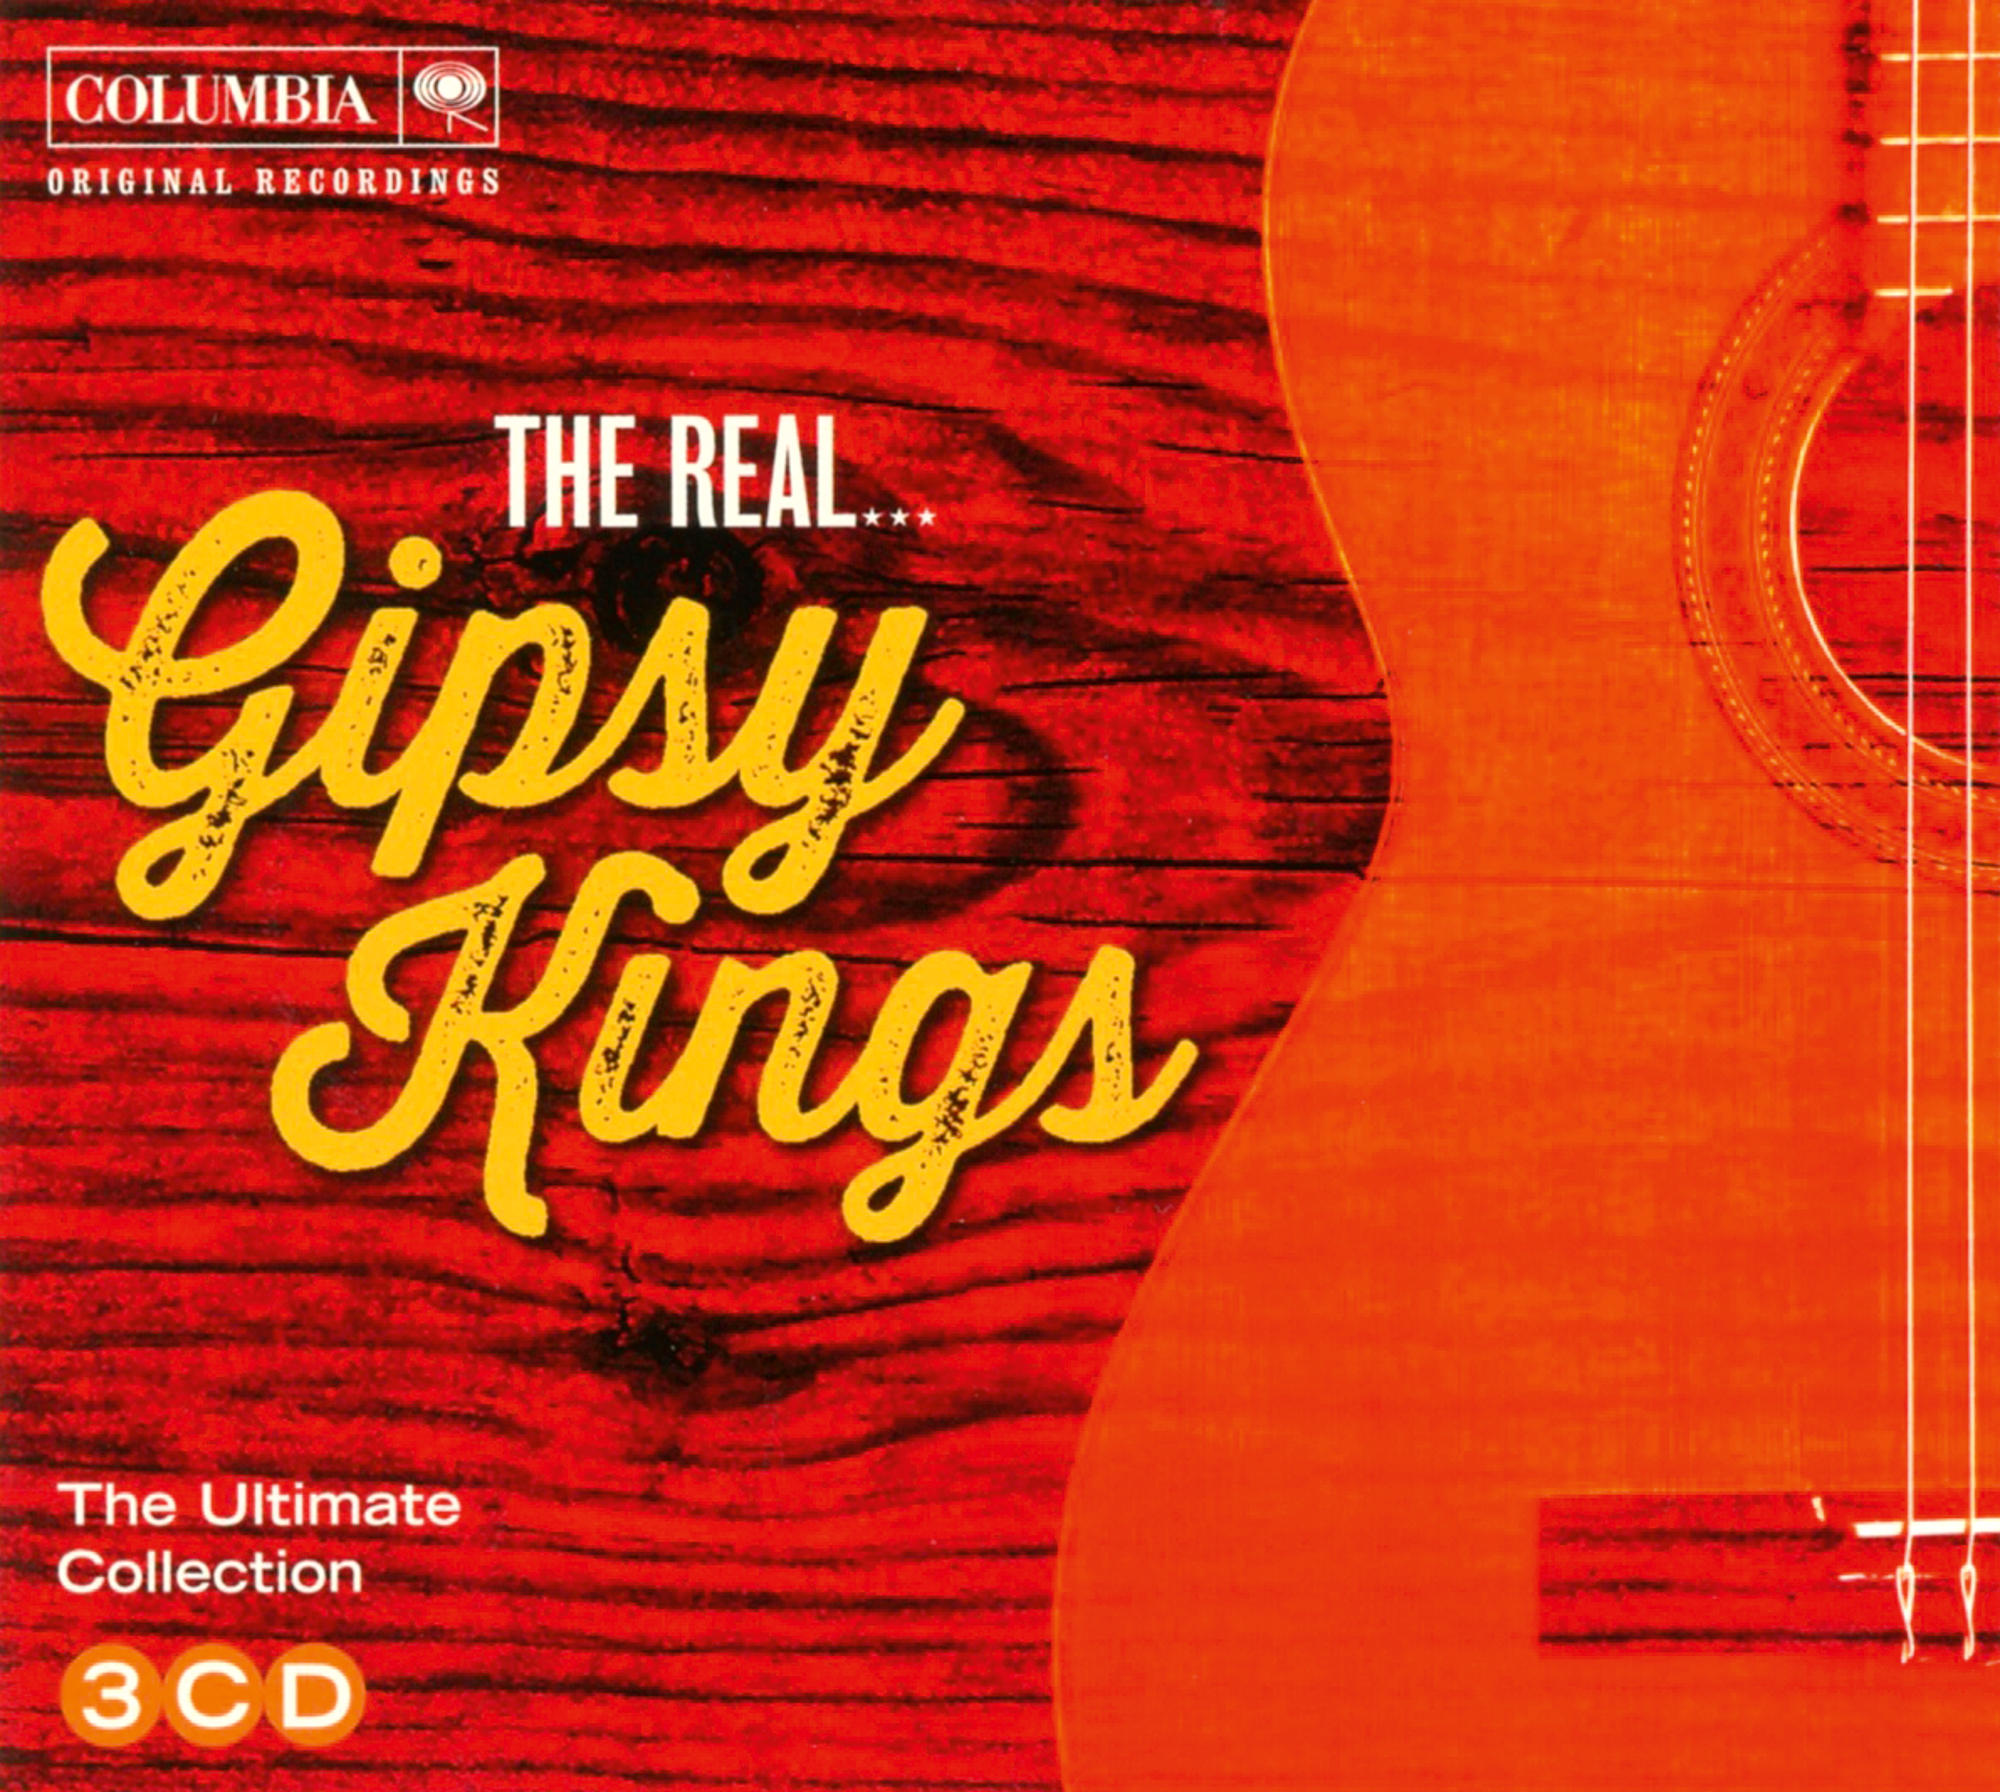 Gipsy Kings - Gipsy The (CD) Real... Kings 